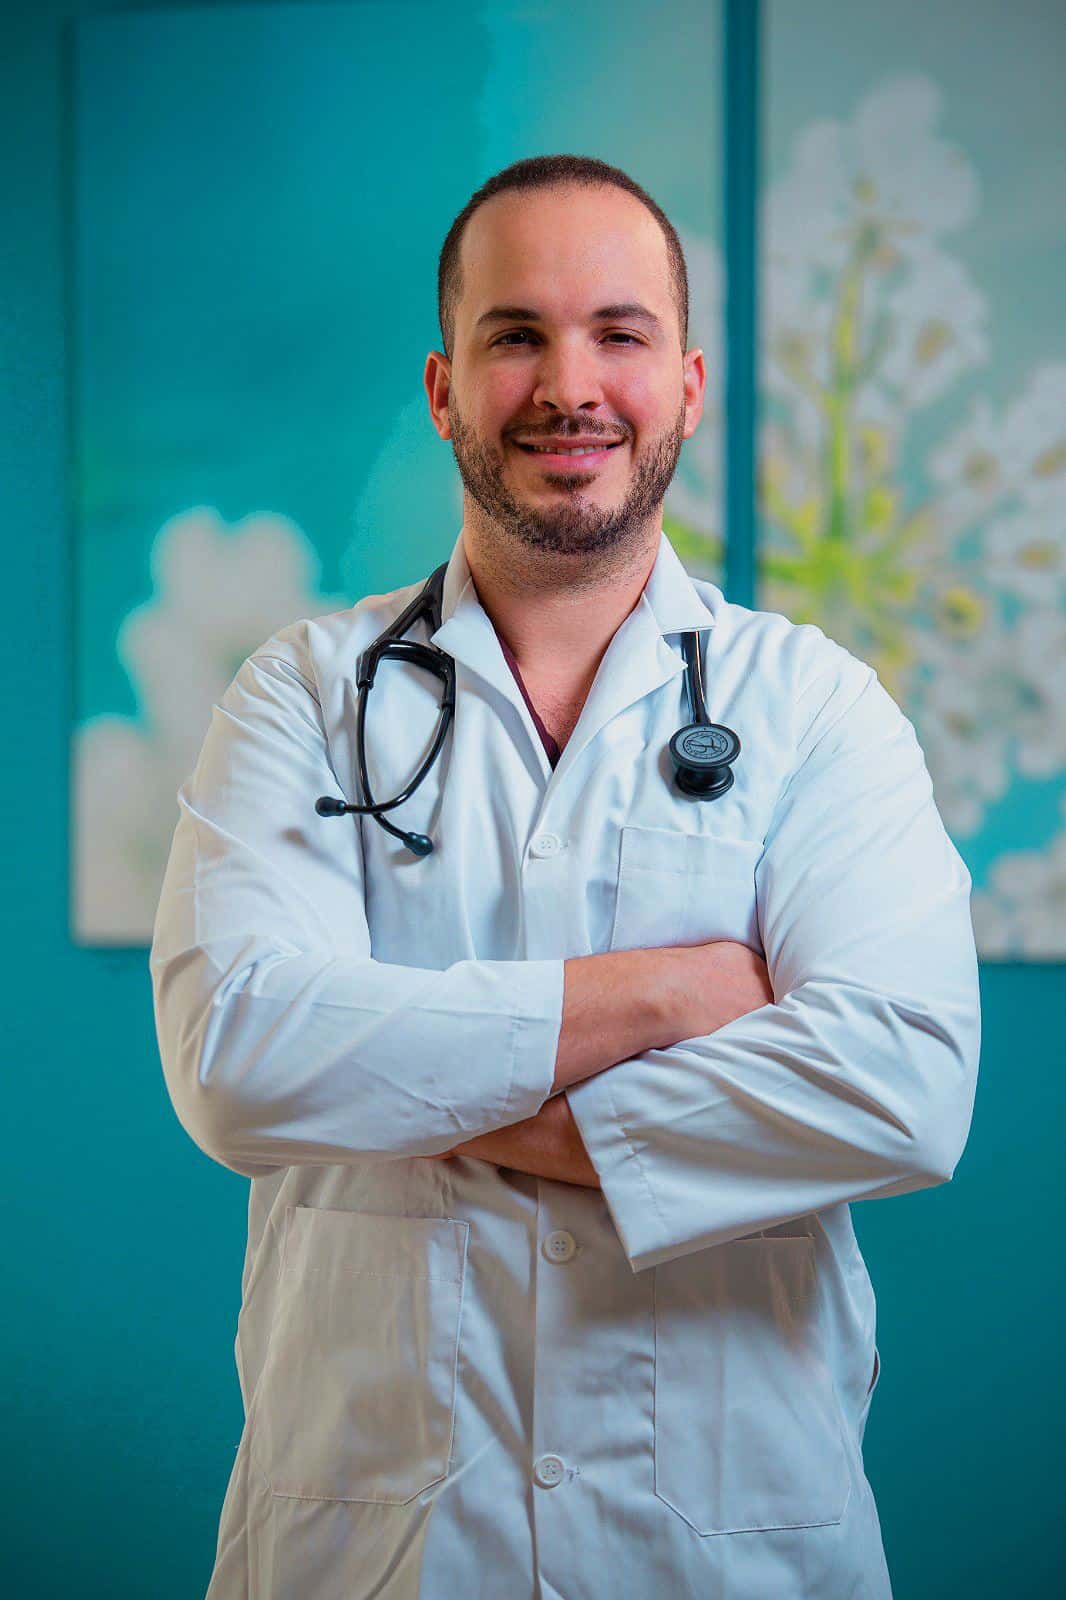 Dr. Jhan Carlos González: “La neumonía no debe tratarse con remedios caseros”